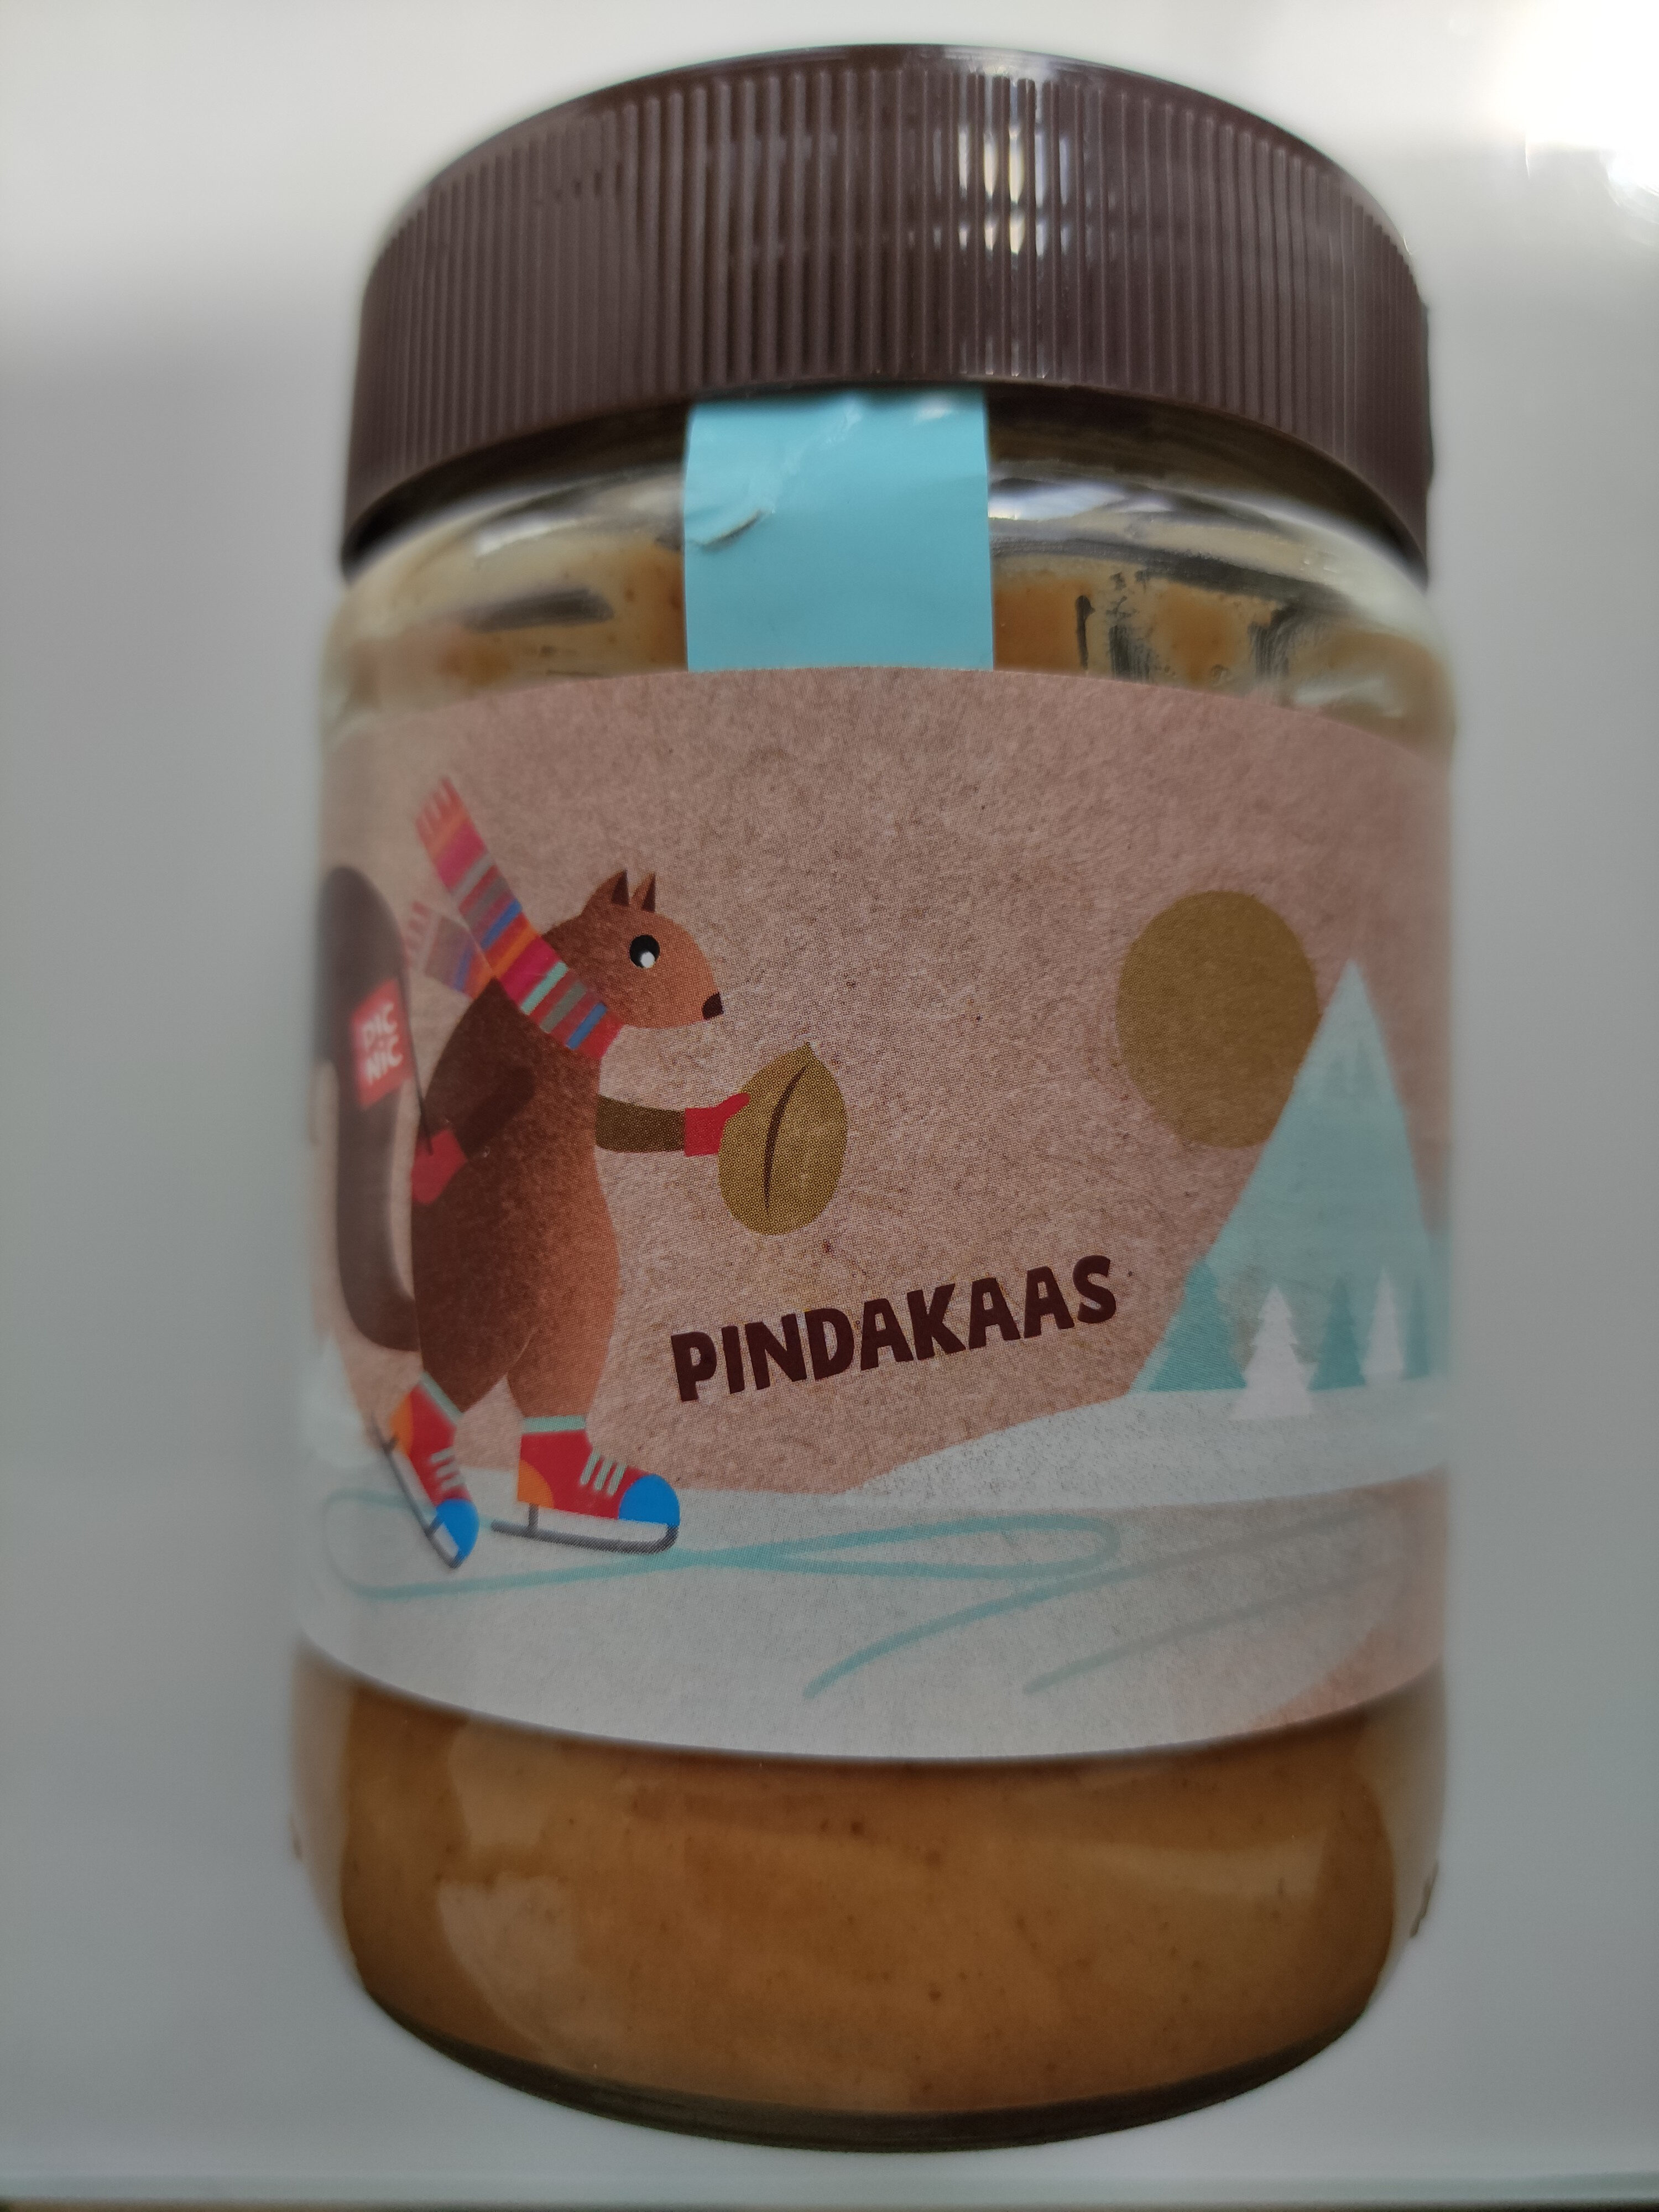 Pindakaas - Product